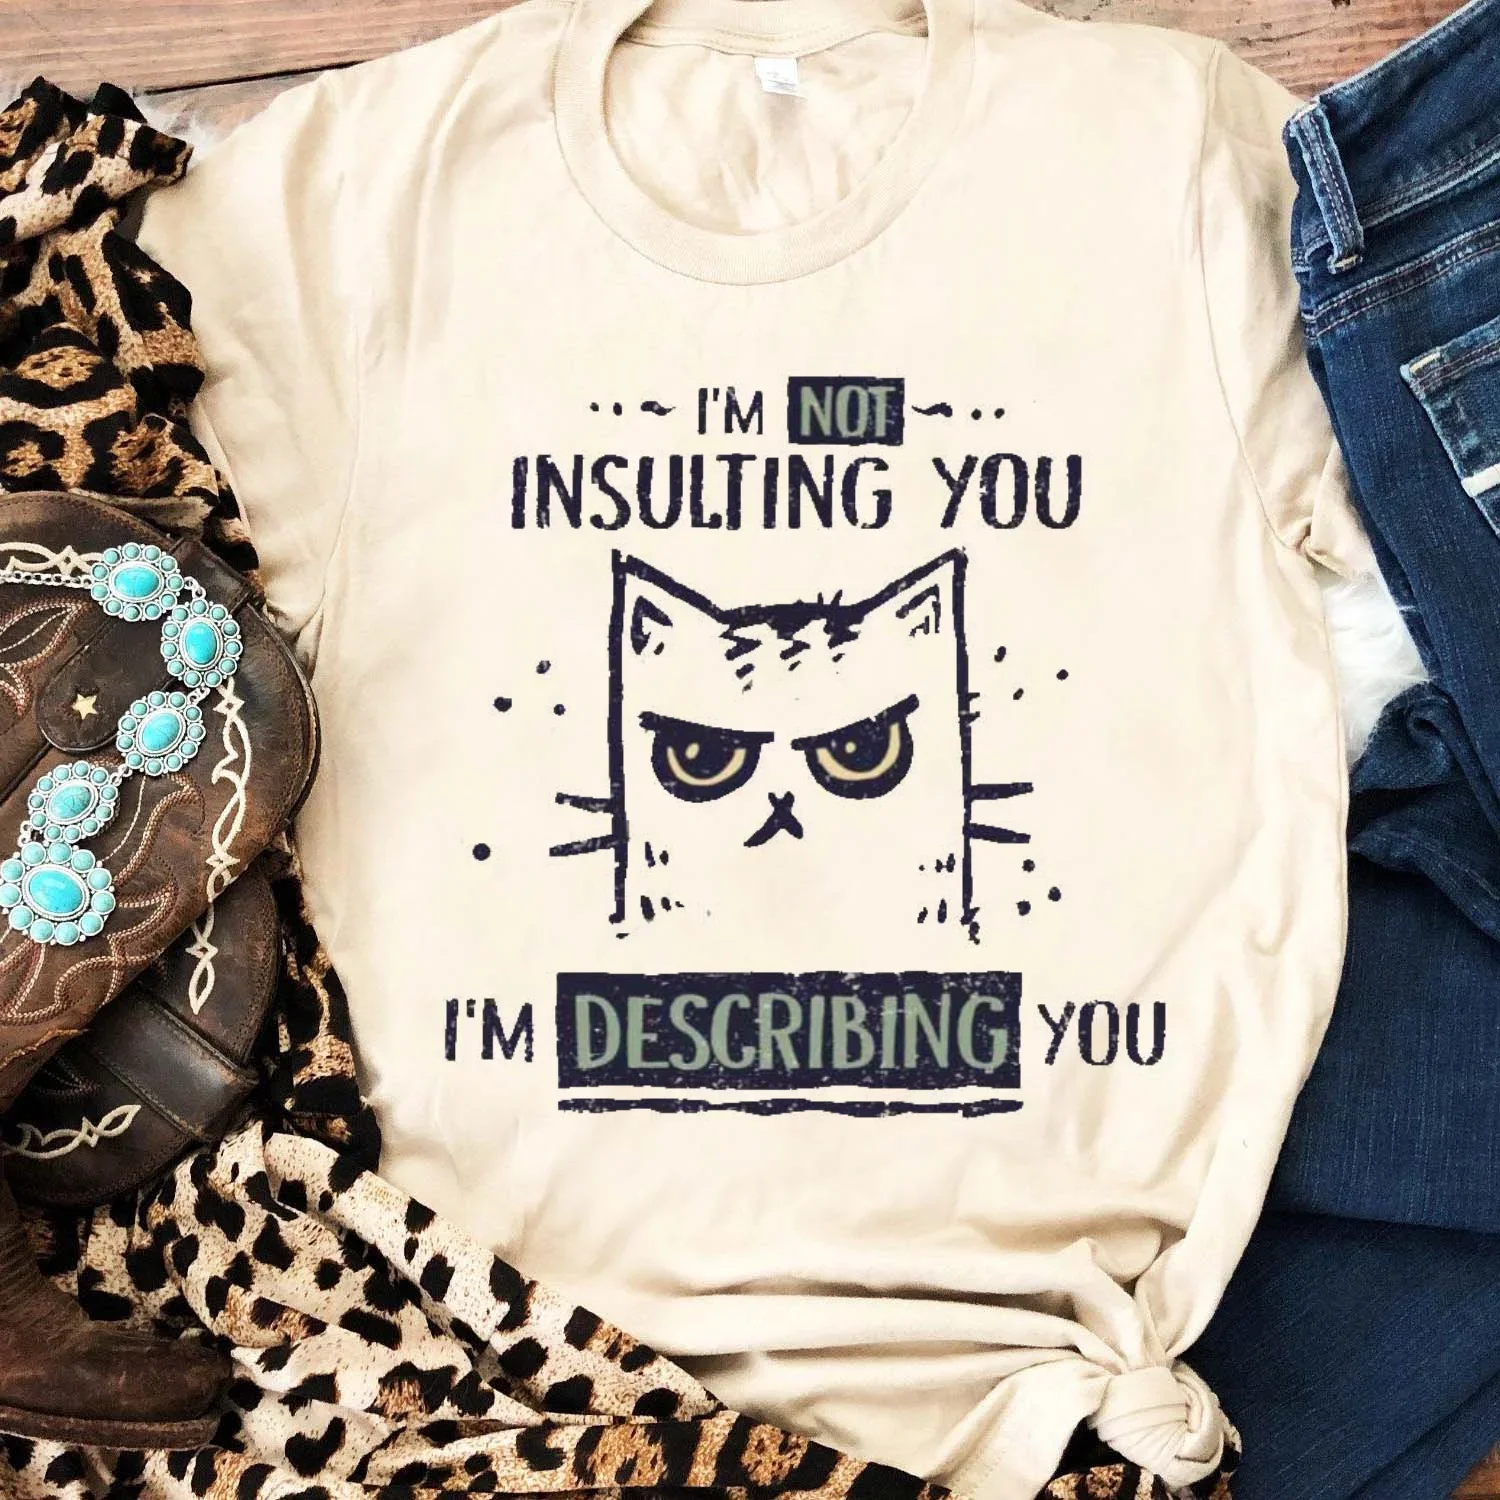 

Футболка для отдыха, милая одежда в стиле 90-х, базовый топ, женская модная Милая футболка с принтом, футболка большого размера с забавным рисунком кота